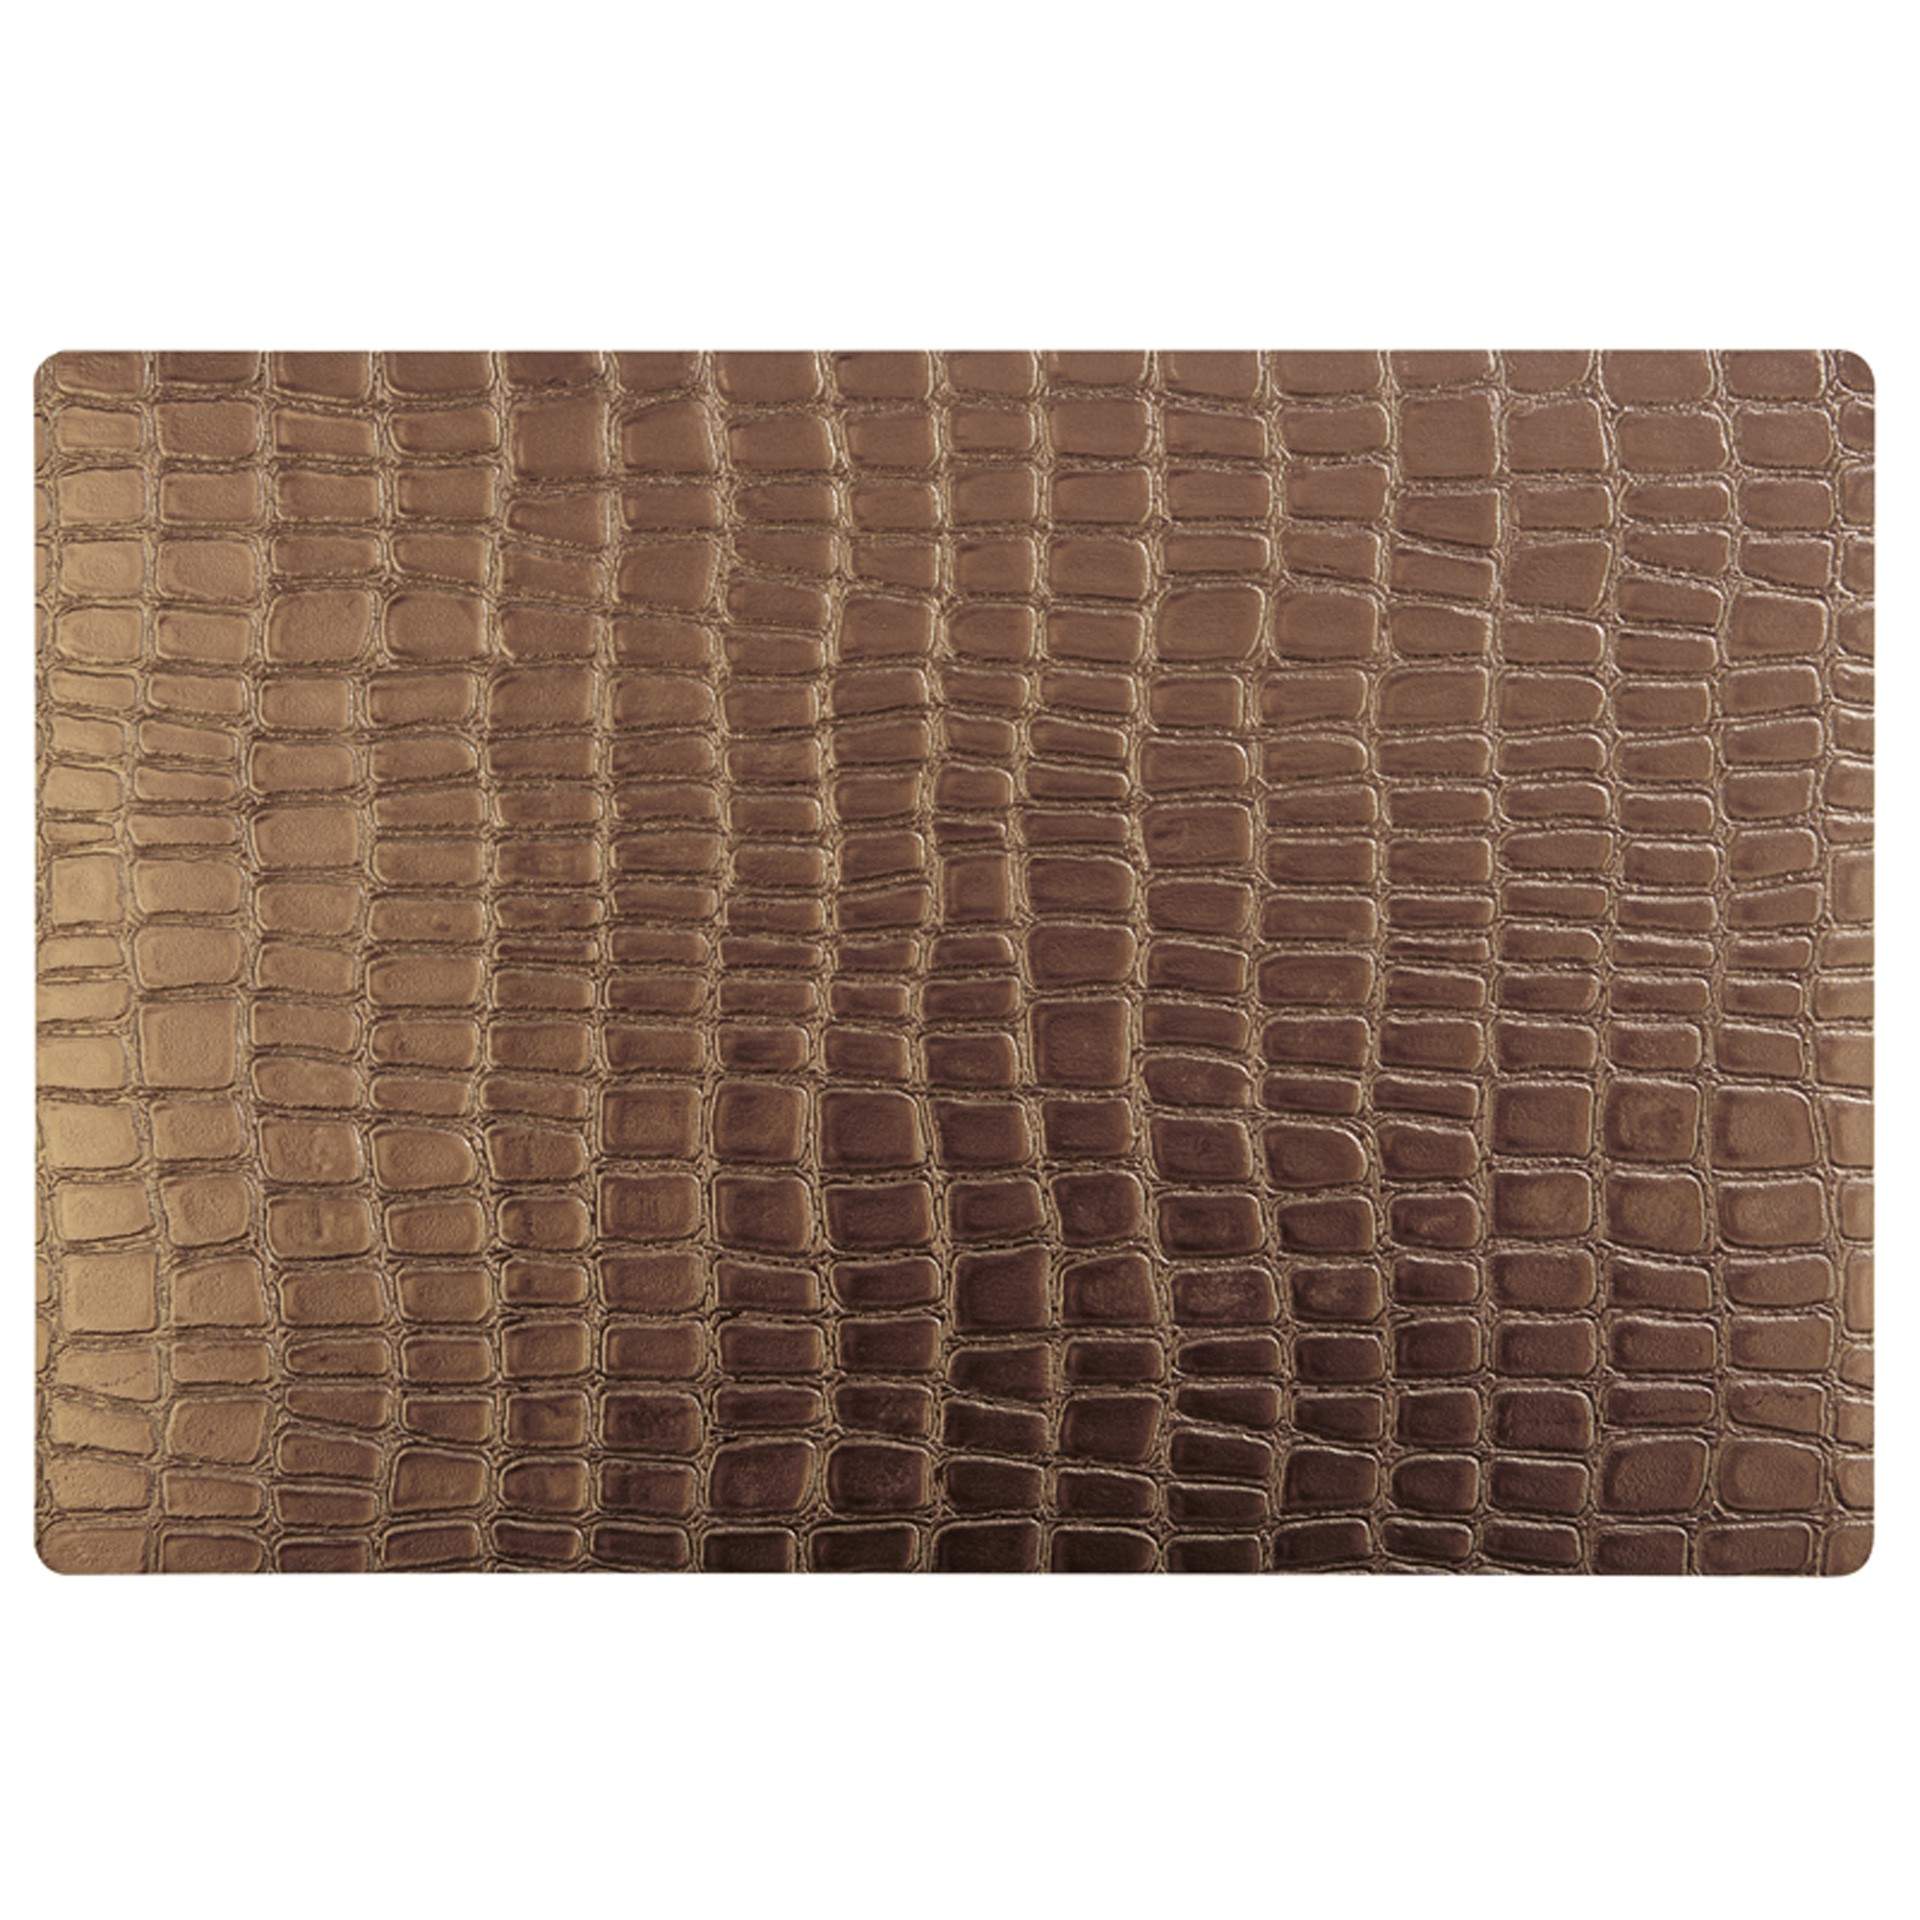 Tischset - Krokodil-Muster - Serie Croco - kupferoptik - rechteckig - Abm. 45 x 30 cm - Kunststoff / EVA - 60536-B